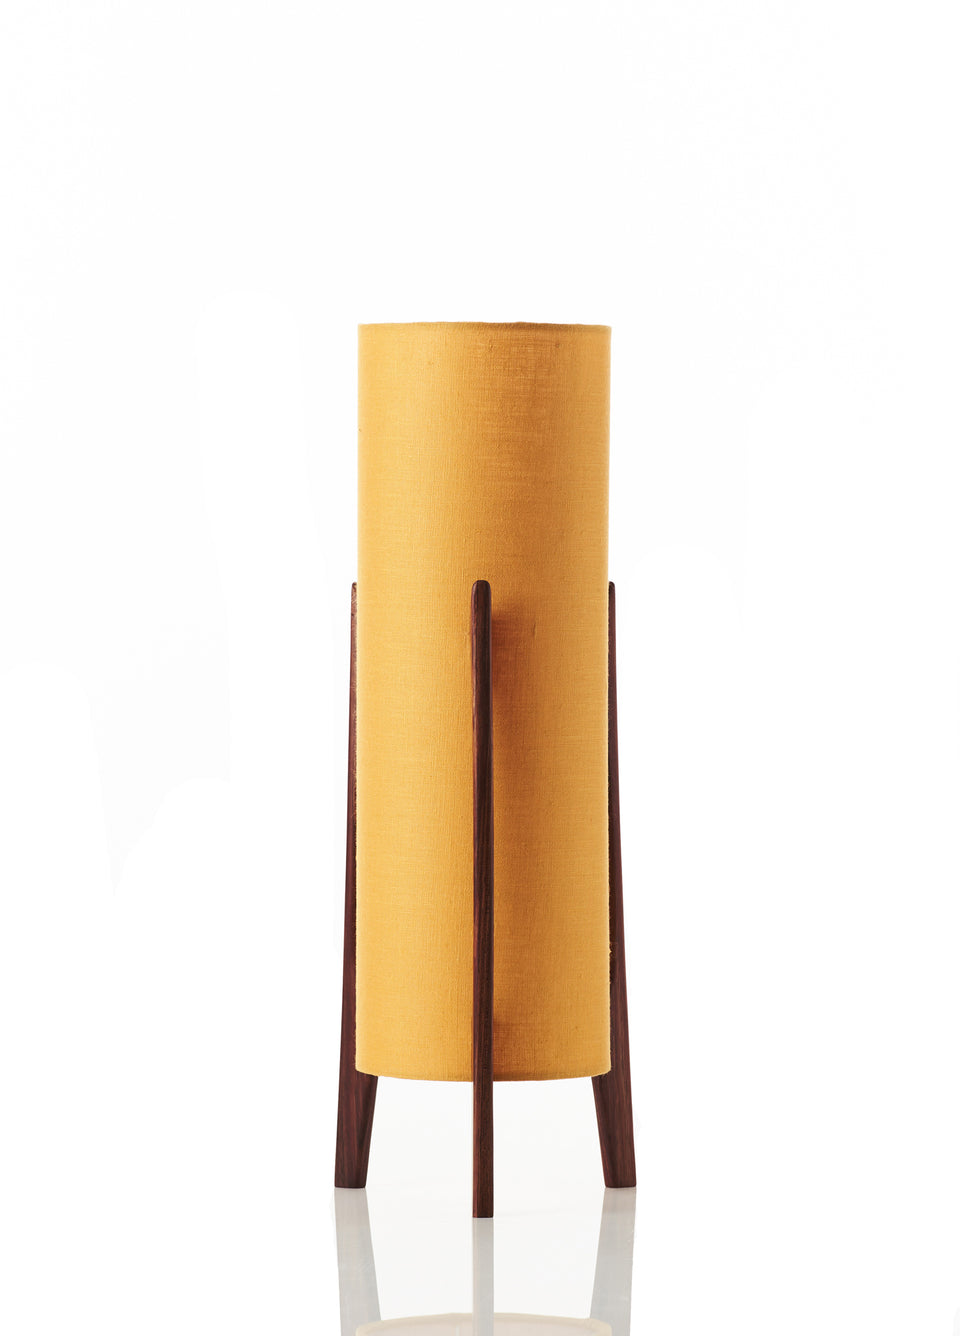 Rocket Table Lamp • Small - Mustard Linen